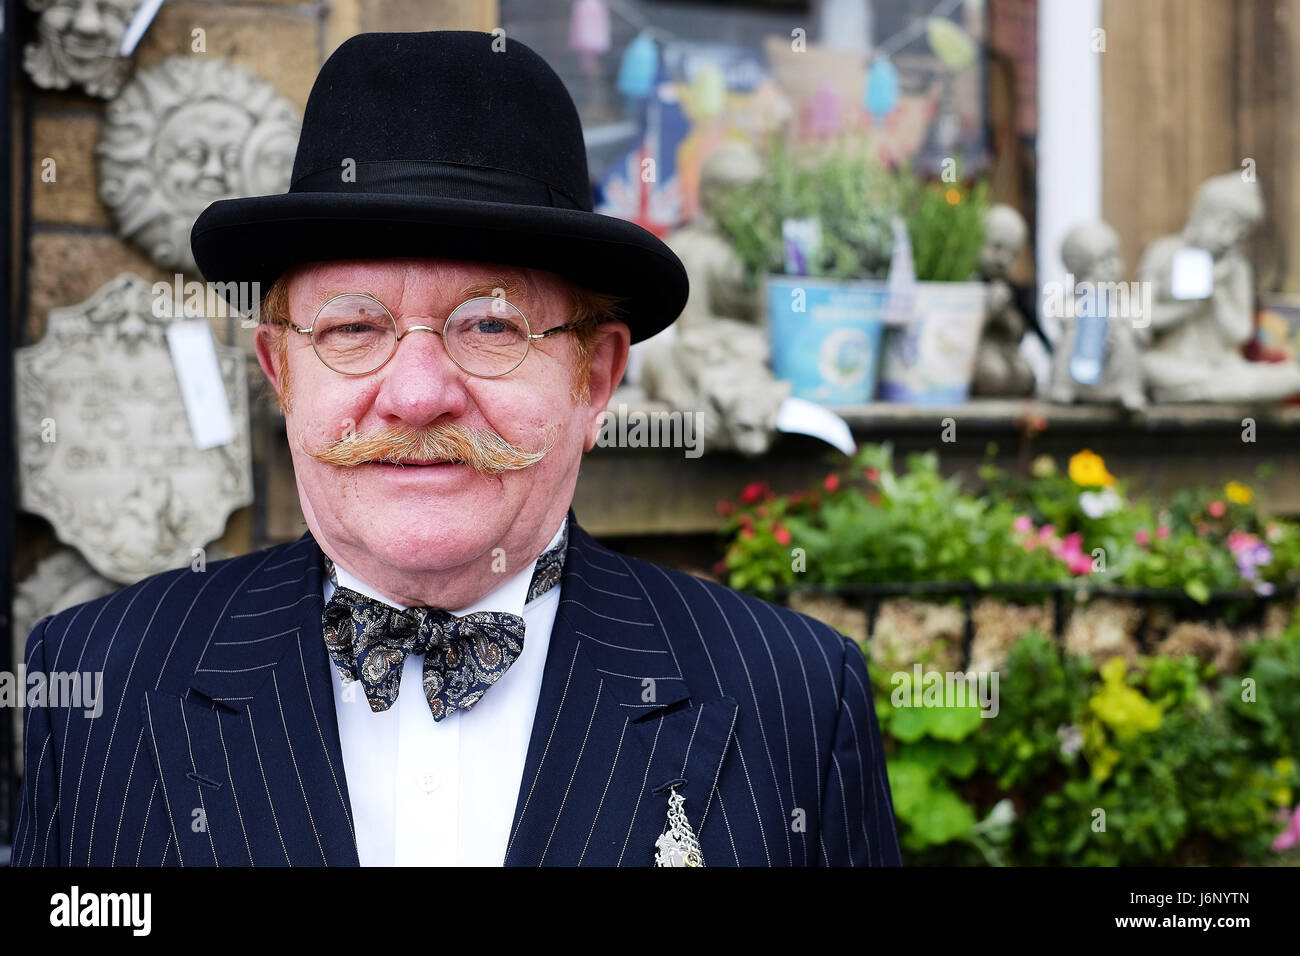 Un homme d'âge moyen en costume traditionnel avec une moustache et des lunettes rondes Banque D'Images